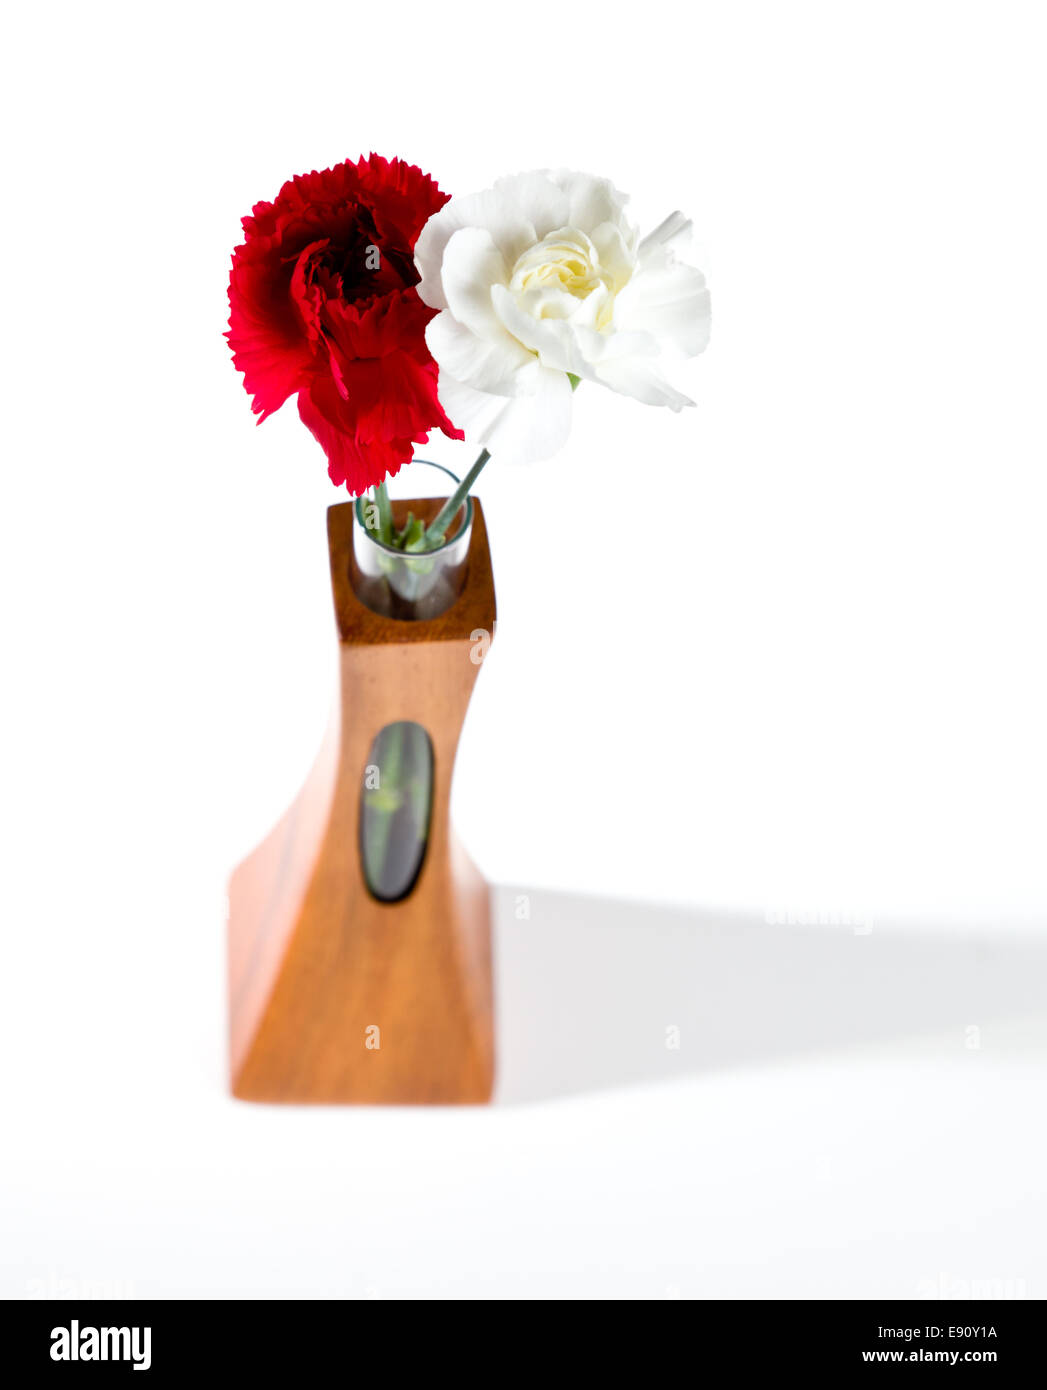 Spray rouge et blanc des œillets dans vase en teck Banque D'Images